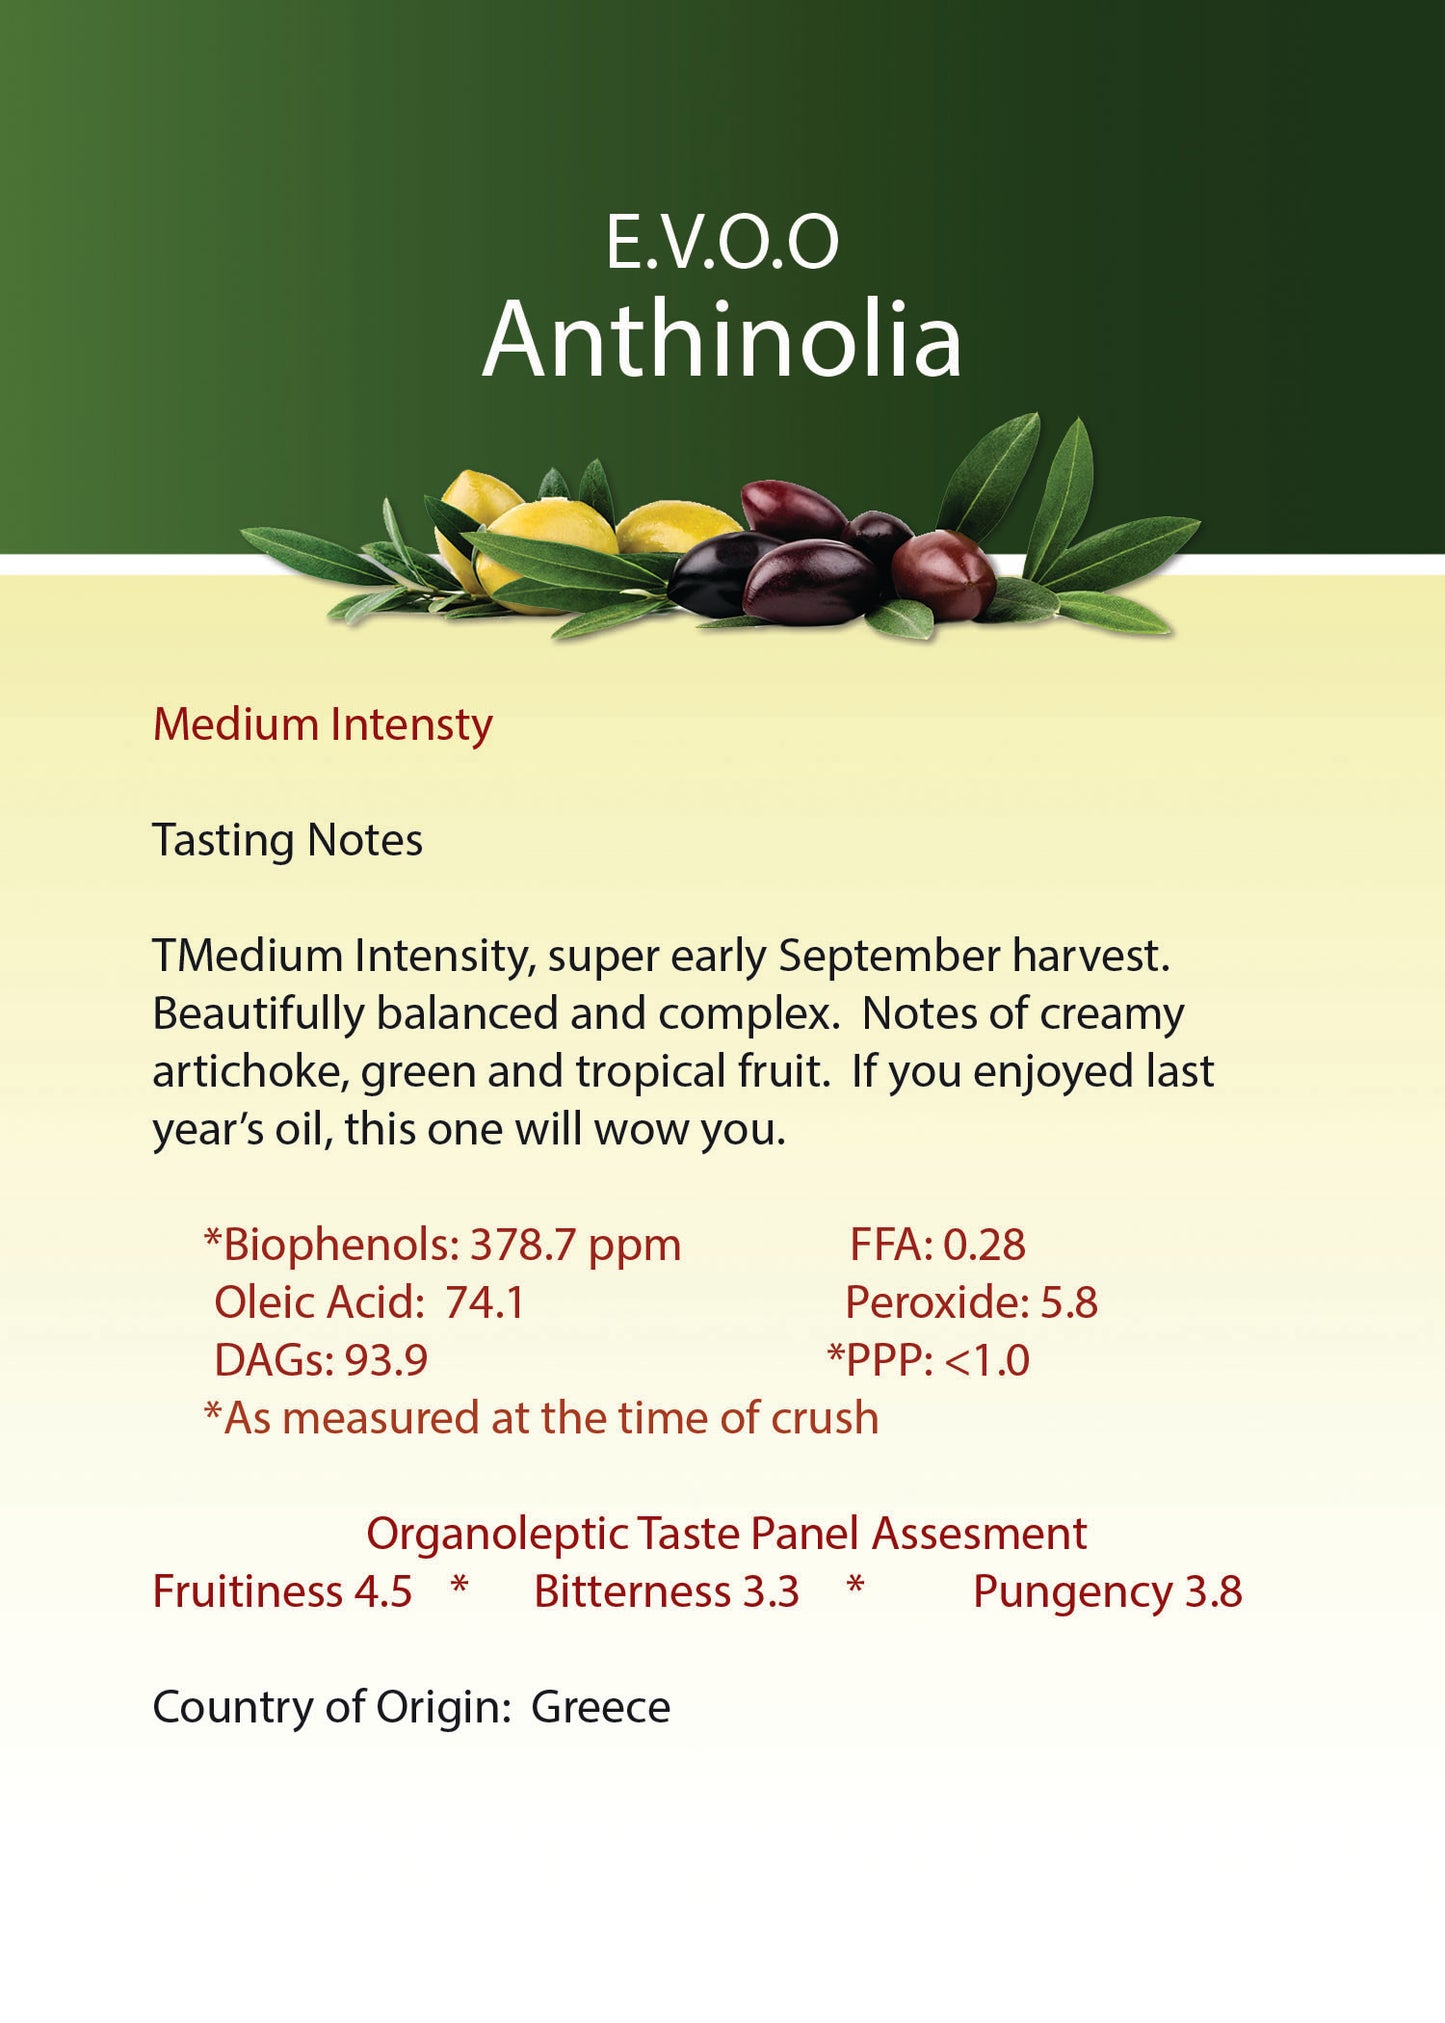 Athinolia Ultra Premium Extra Virgin Olive Oil